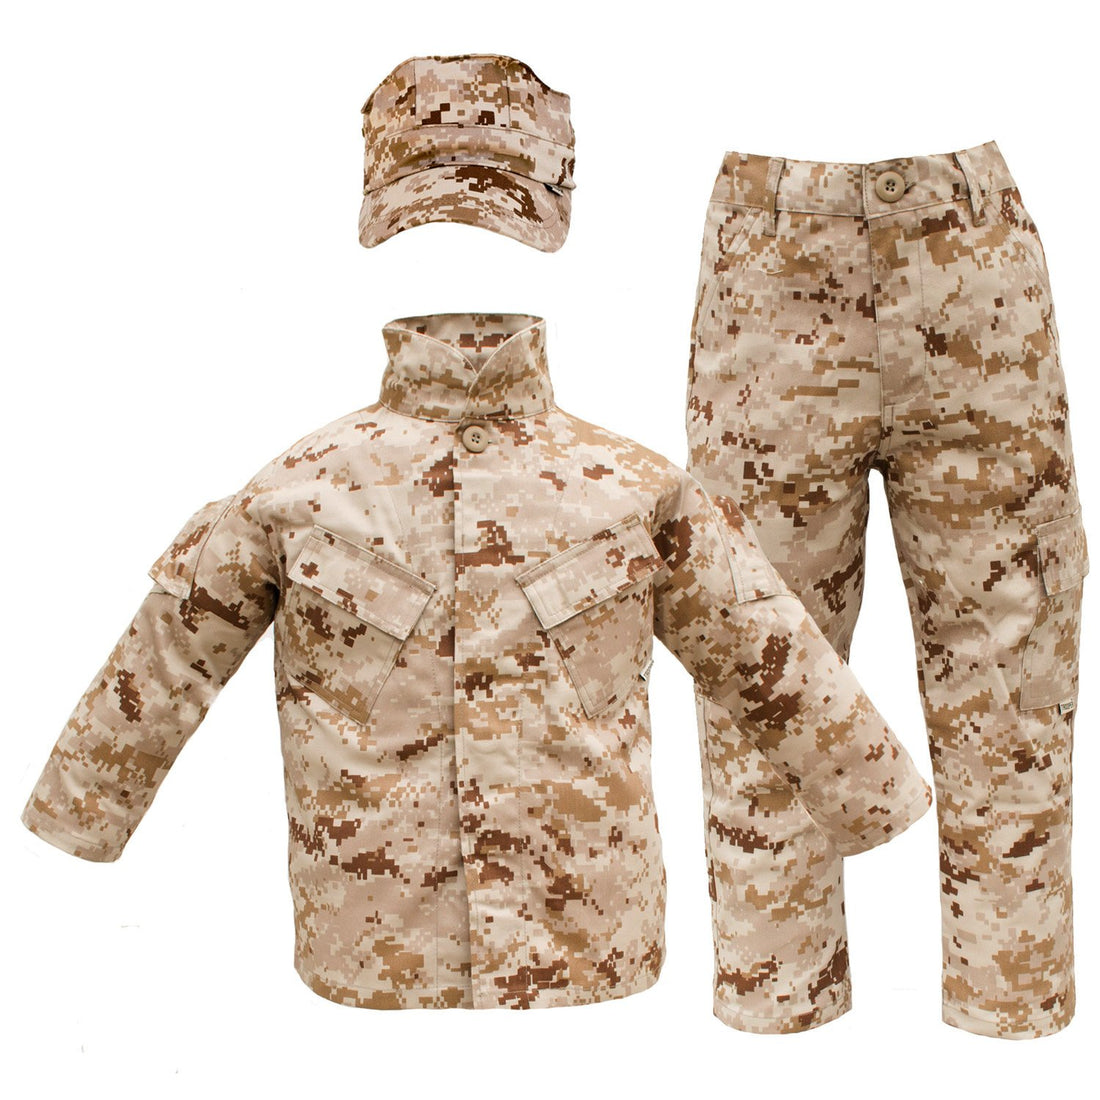  Camo Trooper Value Costume, Child's Medium : Clothing